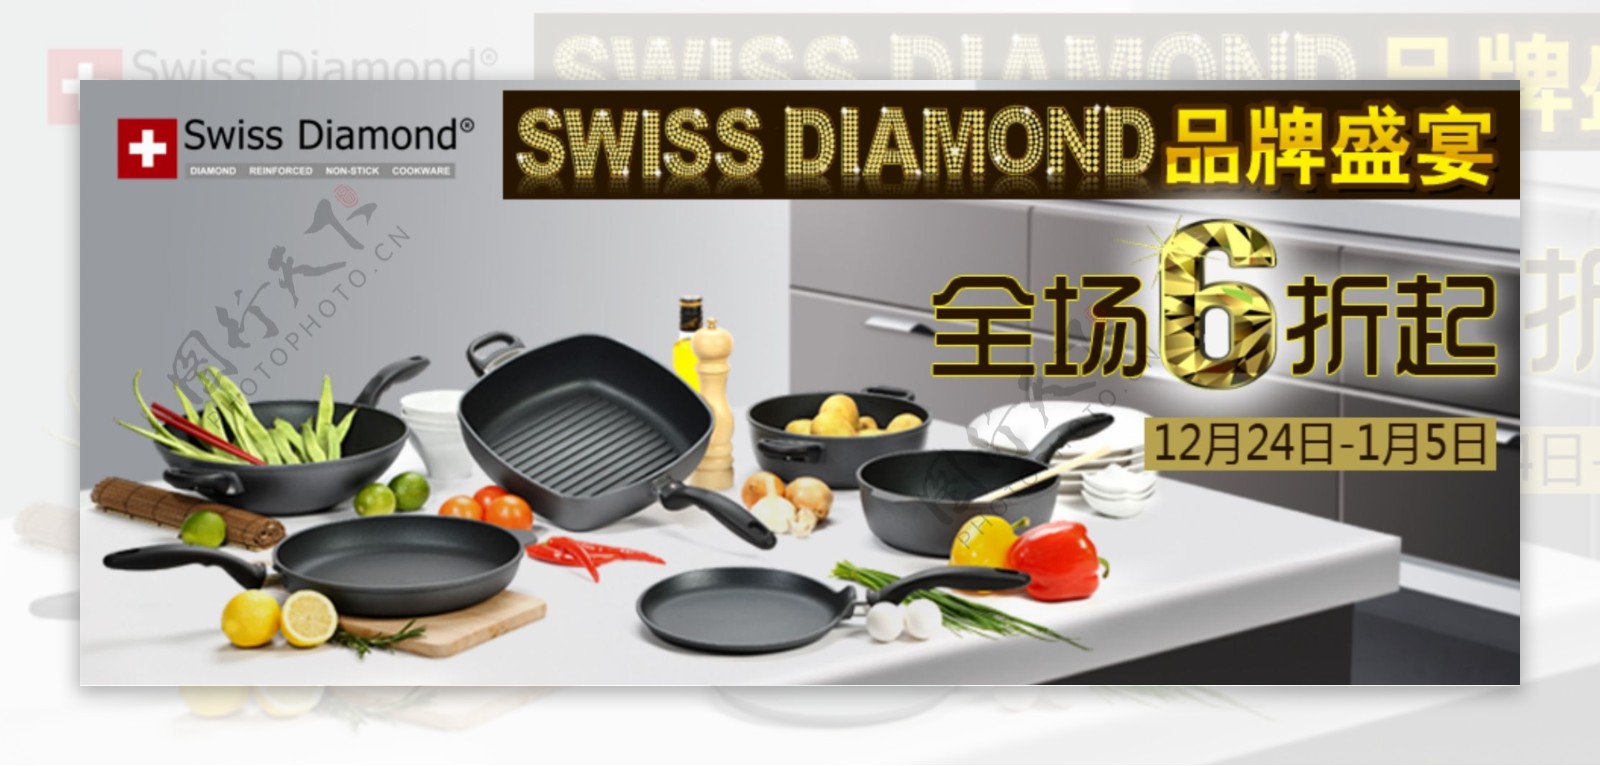 joyhere厨房里的奢侈品瑞士钻石锅图片